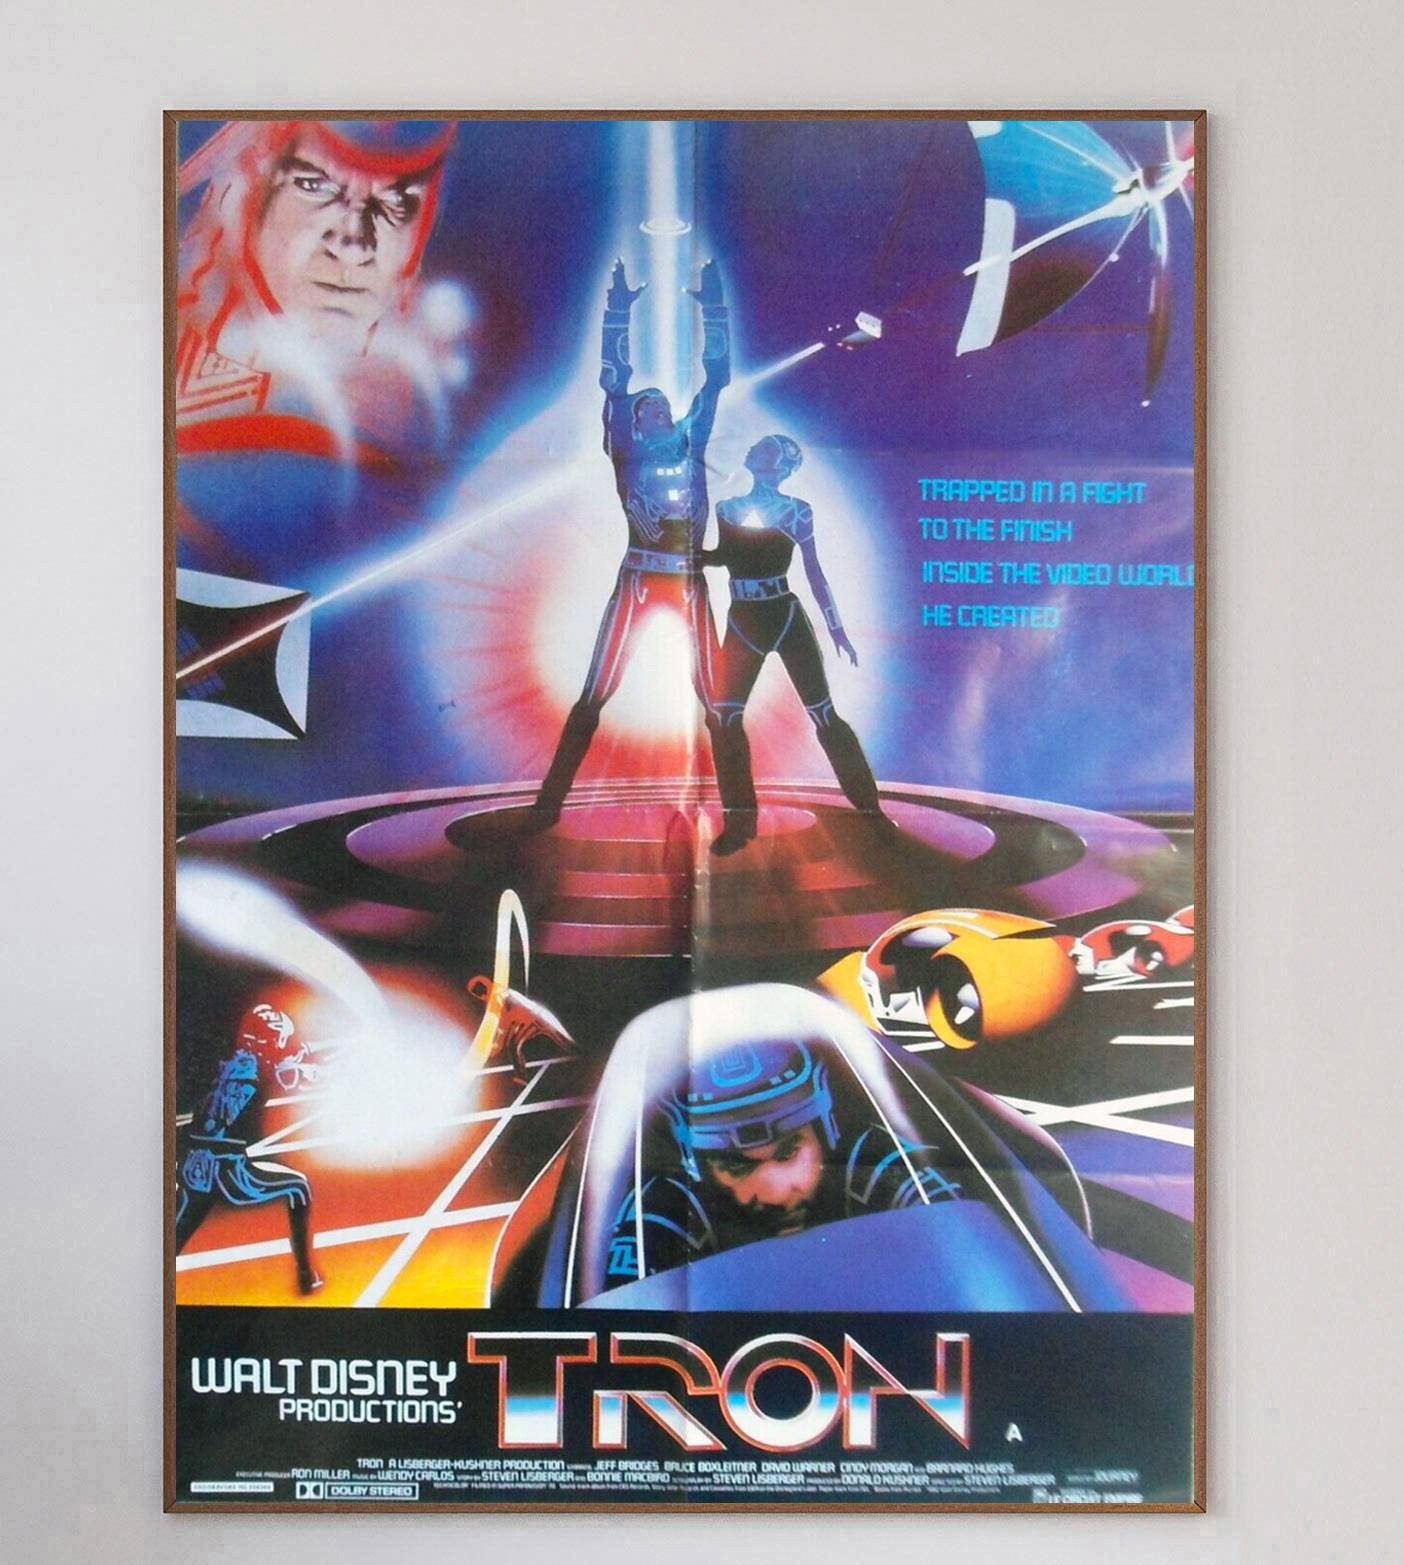 Tron est un film d'action-aventure américain de science-fiction de 1982 écrit et réalisé par Steven Lisberger d'après une histoire de Lisberger et Bonnie MacBird. Le film met en scène Jeff Bridges dans le rôle d'un programmeur informatique qui est